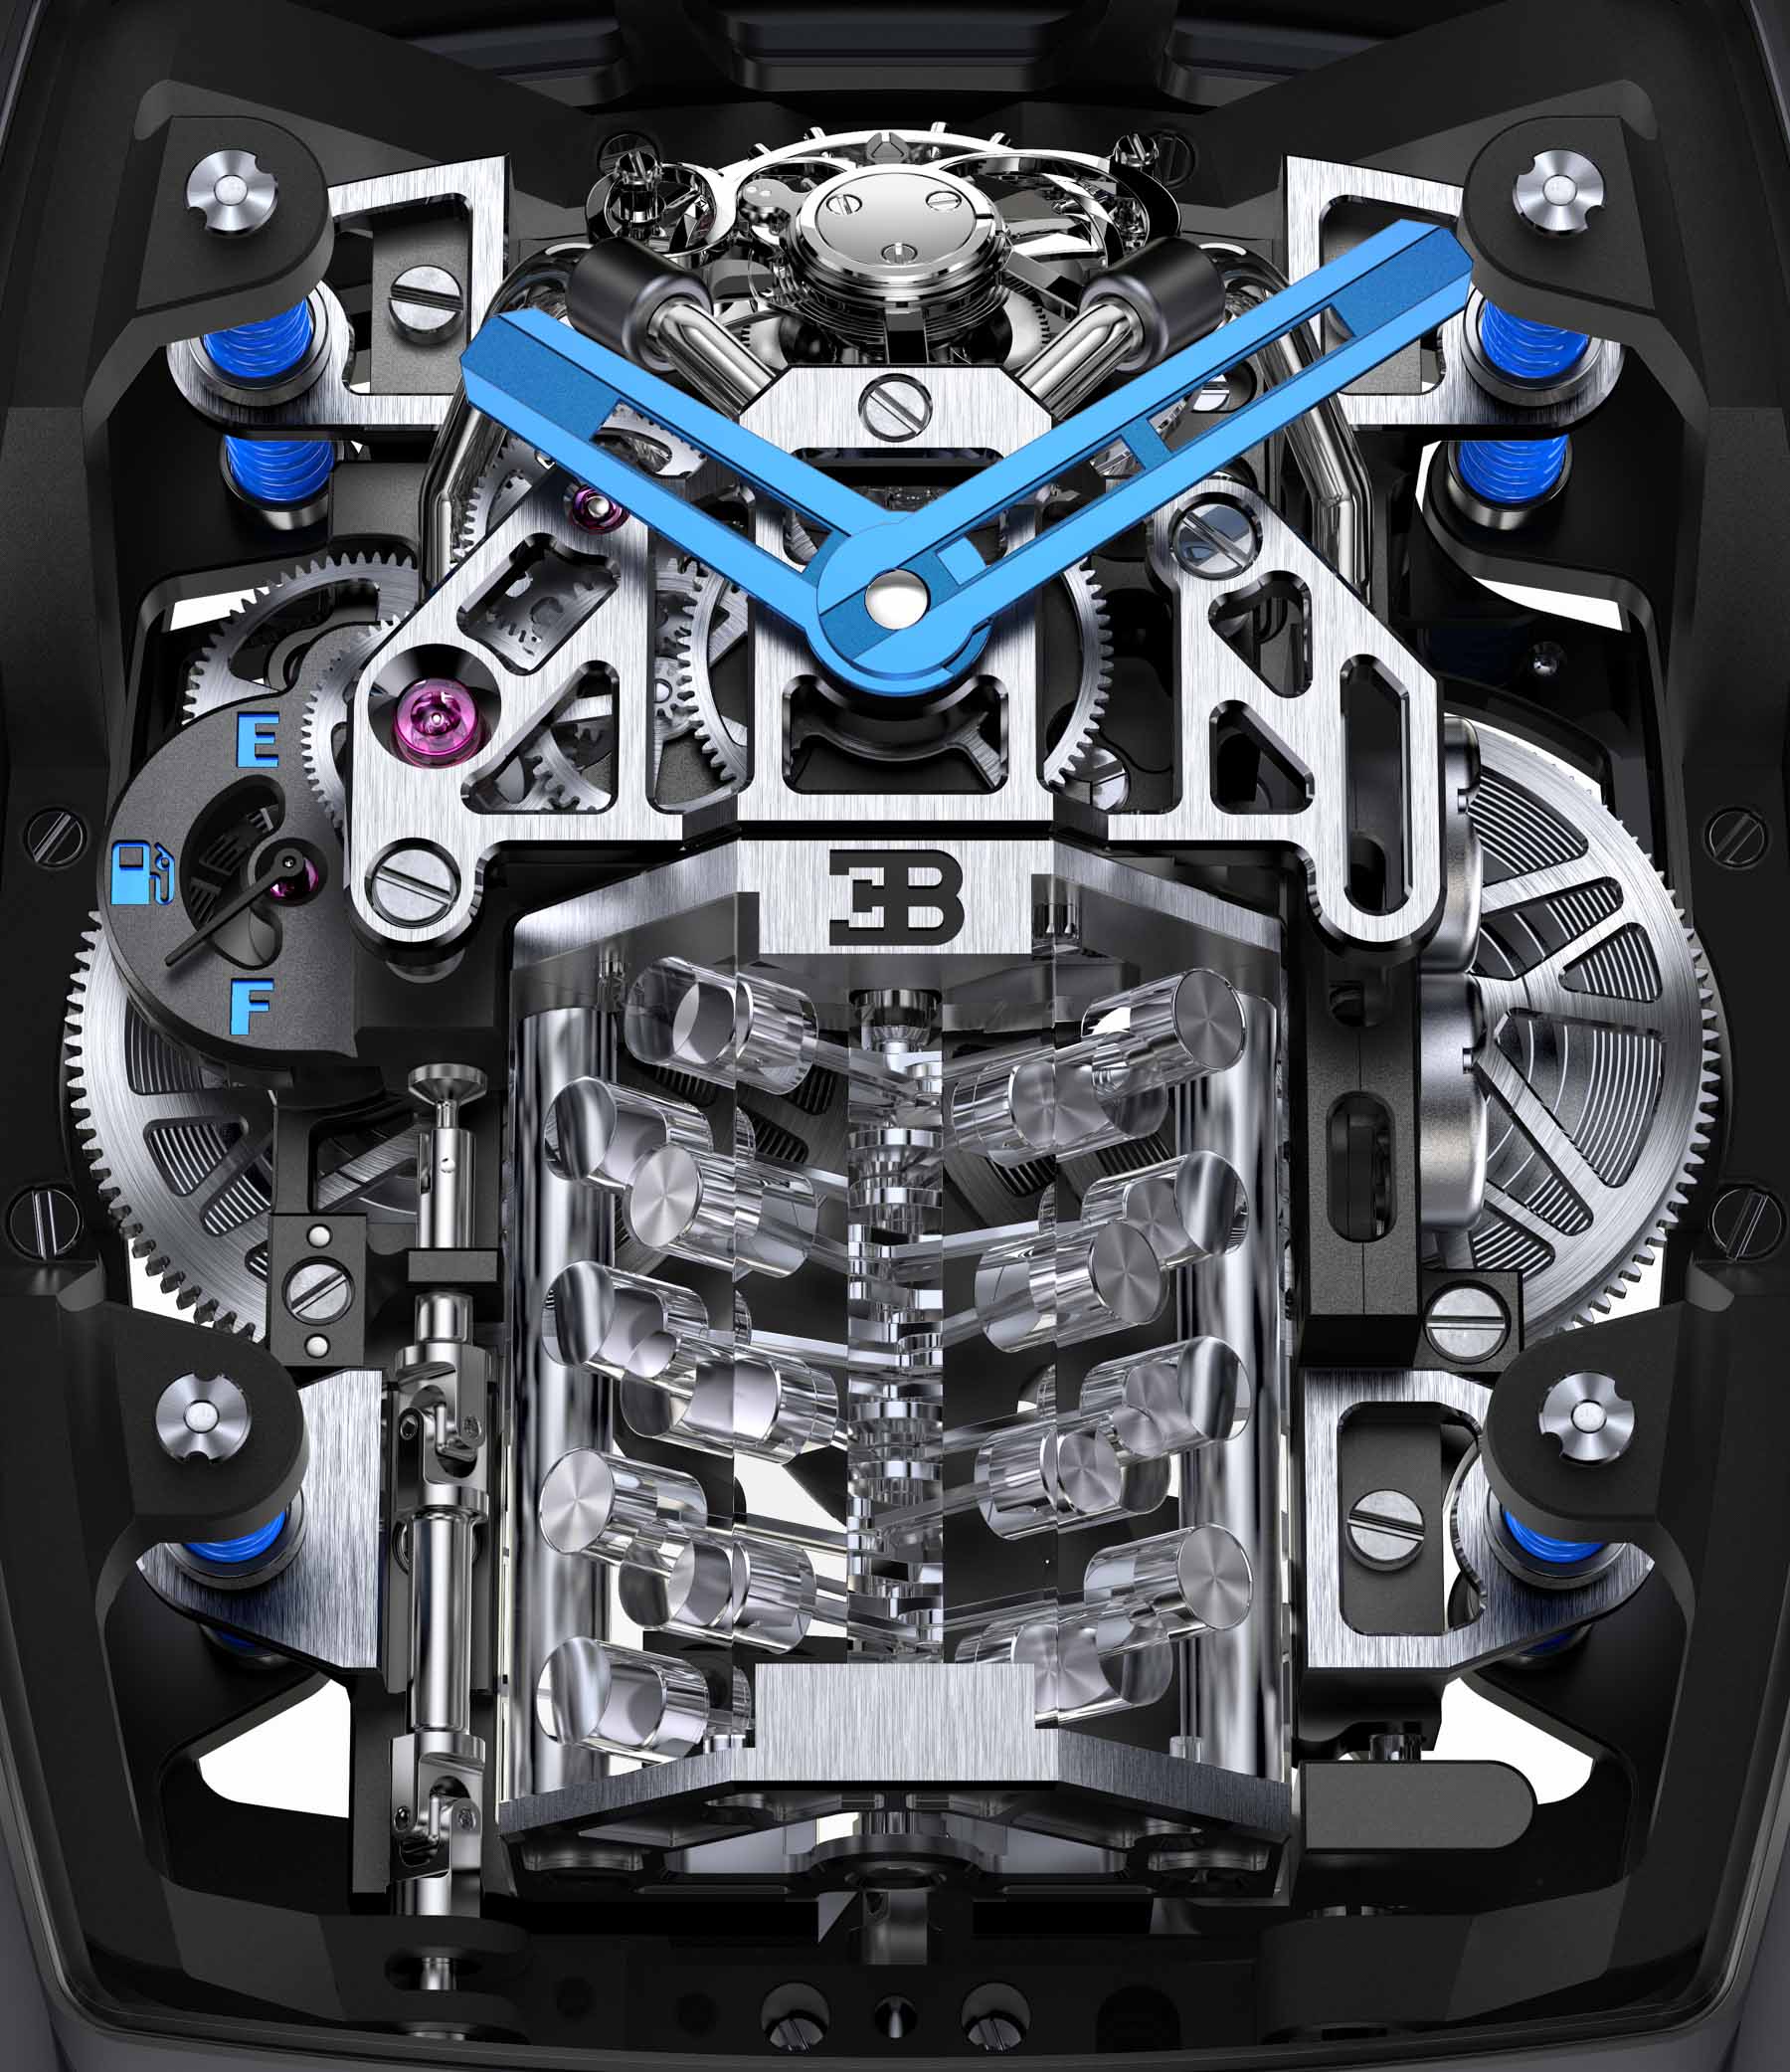 Jacob & Co. Bugatti Chiron Tourbillon Encapsulates A Working W16